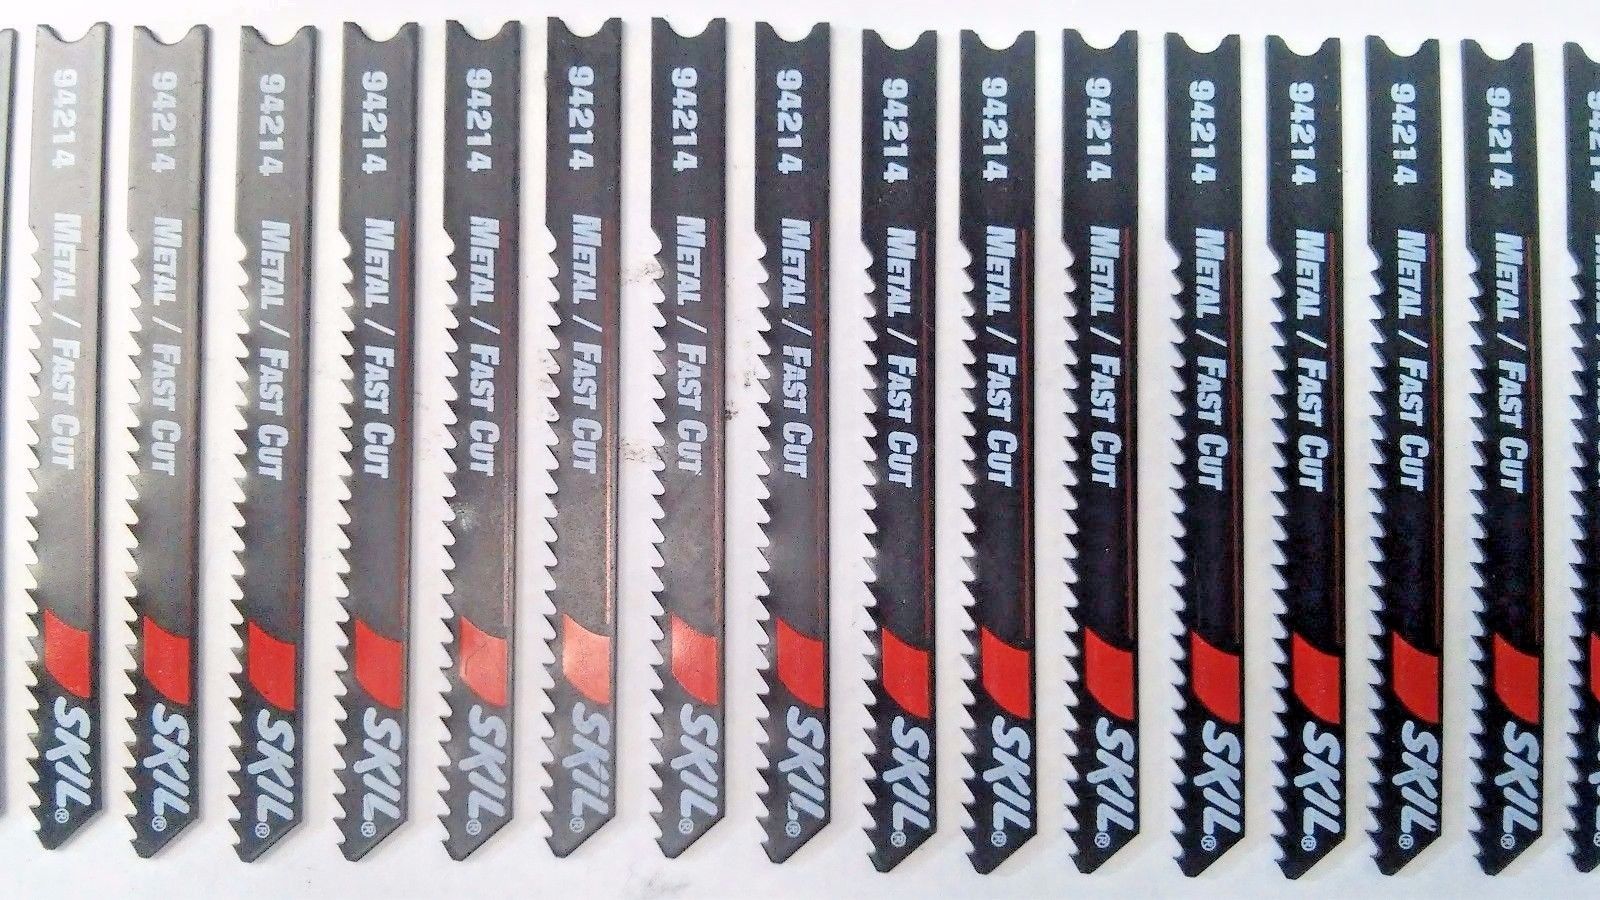 Skil 94214 2-3/4" x 14 TPI Metal Fast Cut Jig Saw Blades 30PCS